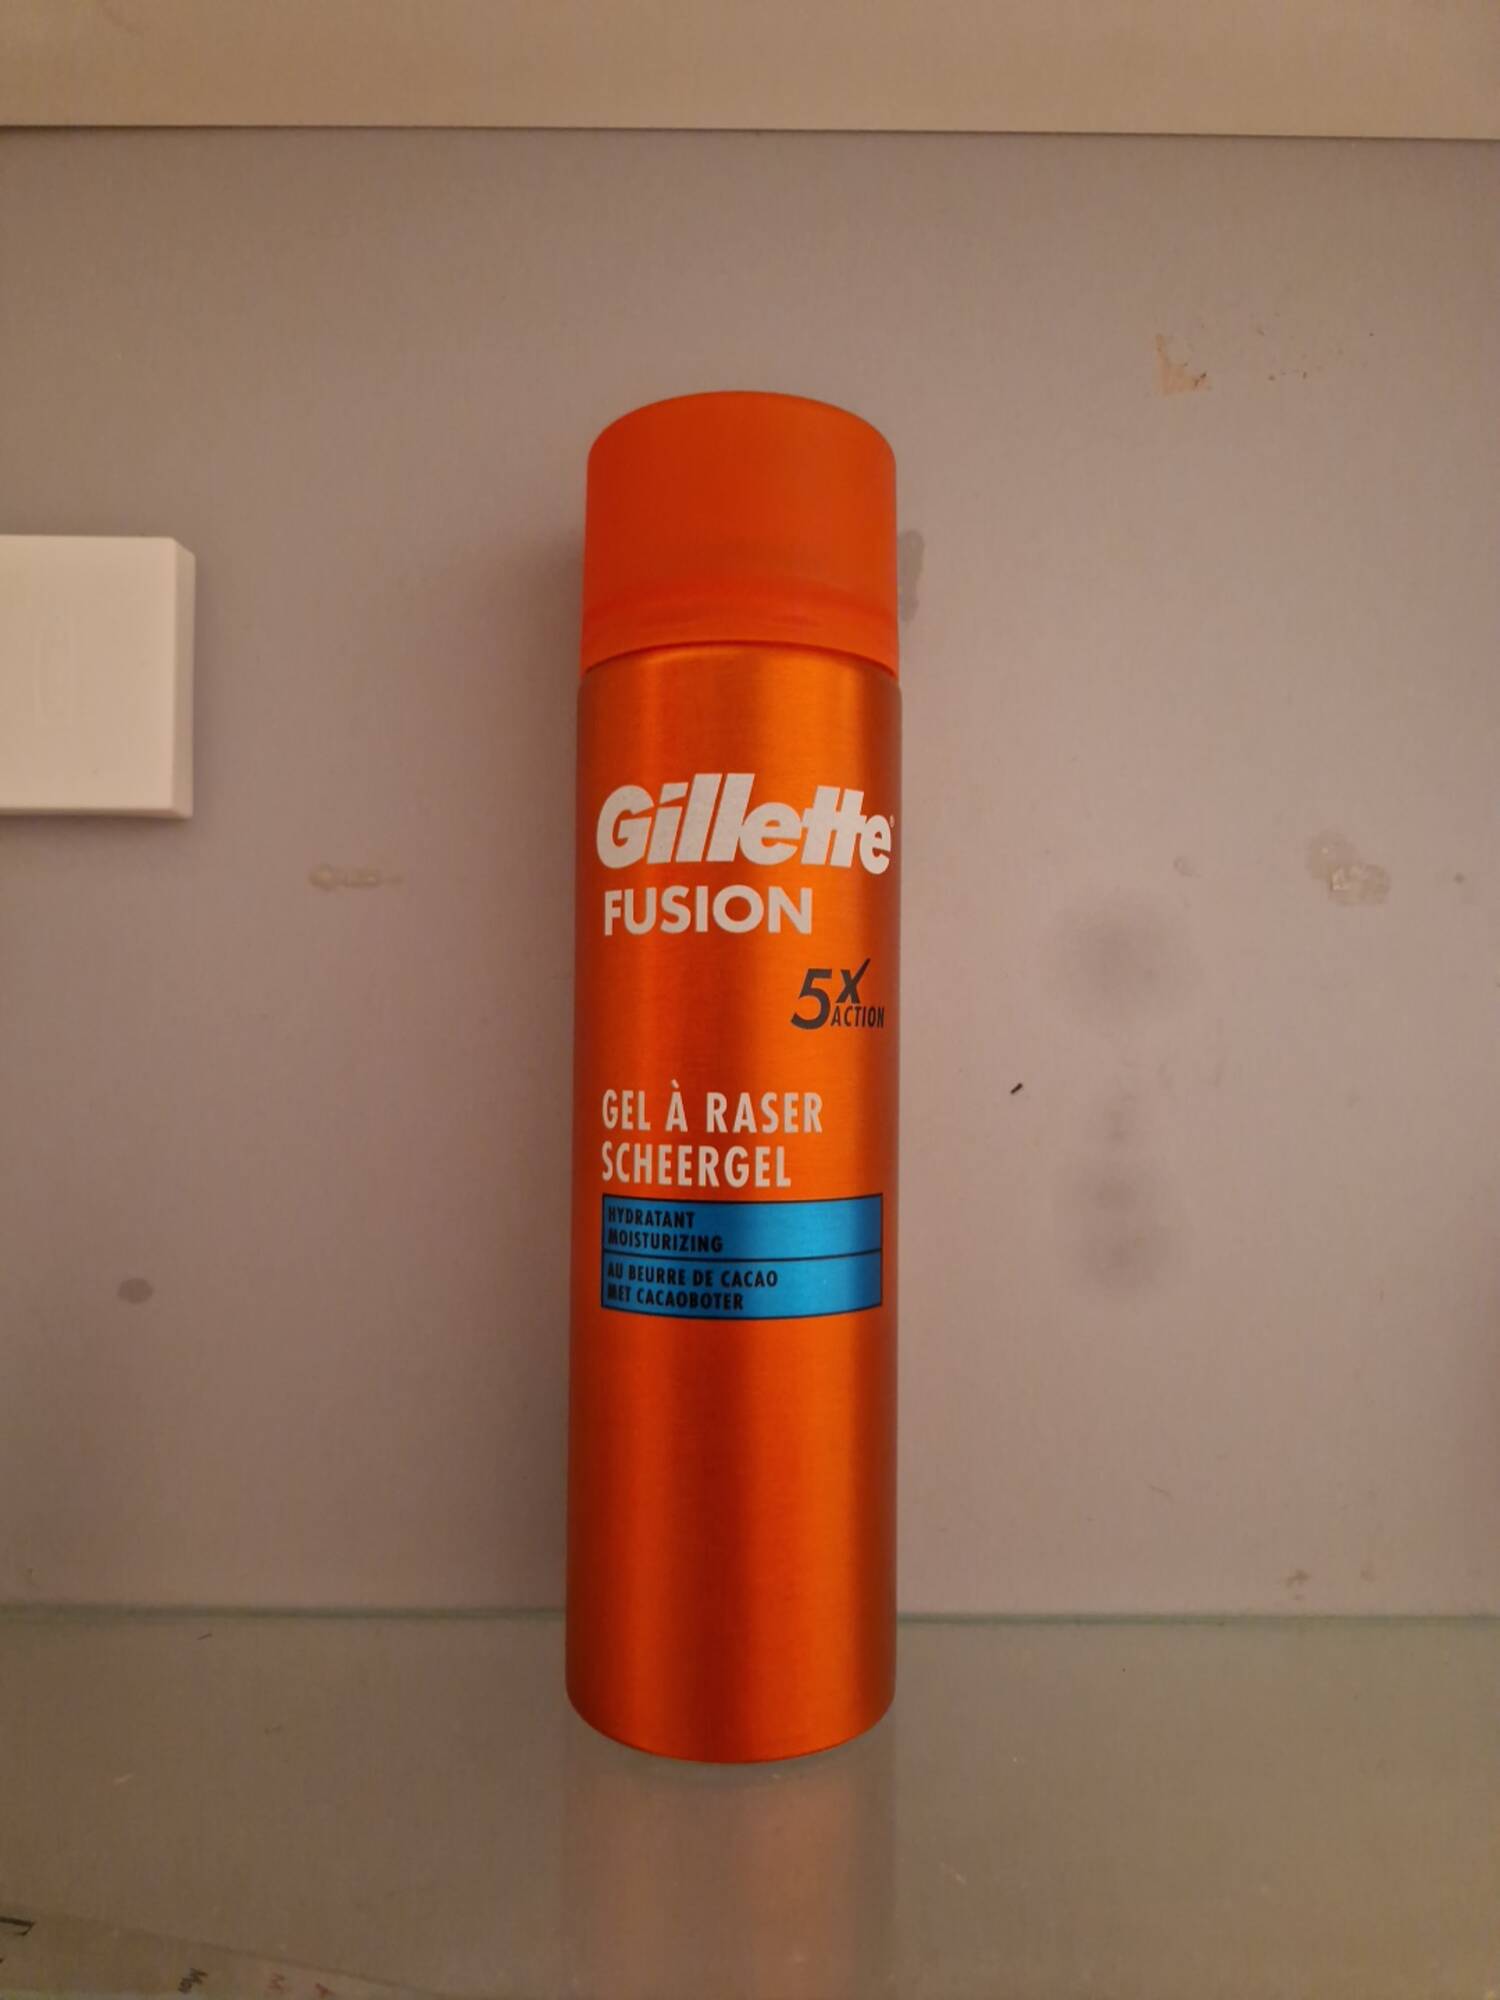 GILLETTE - 5x action fusion - Gel à raser